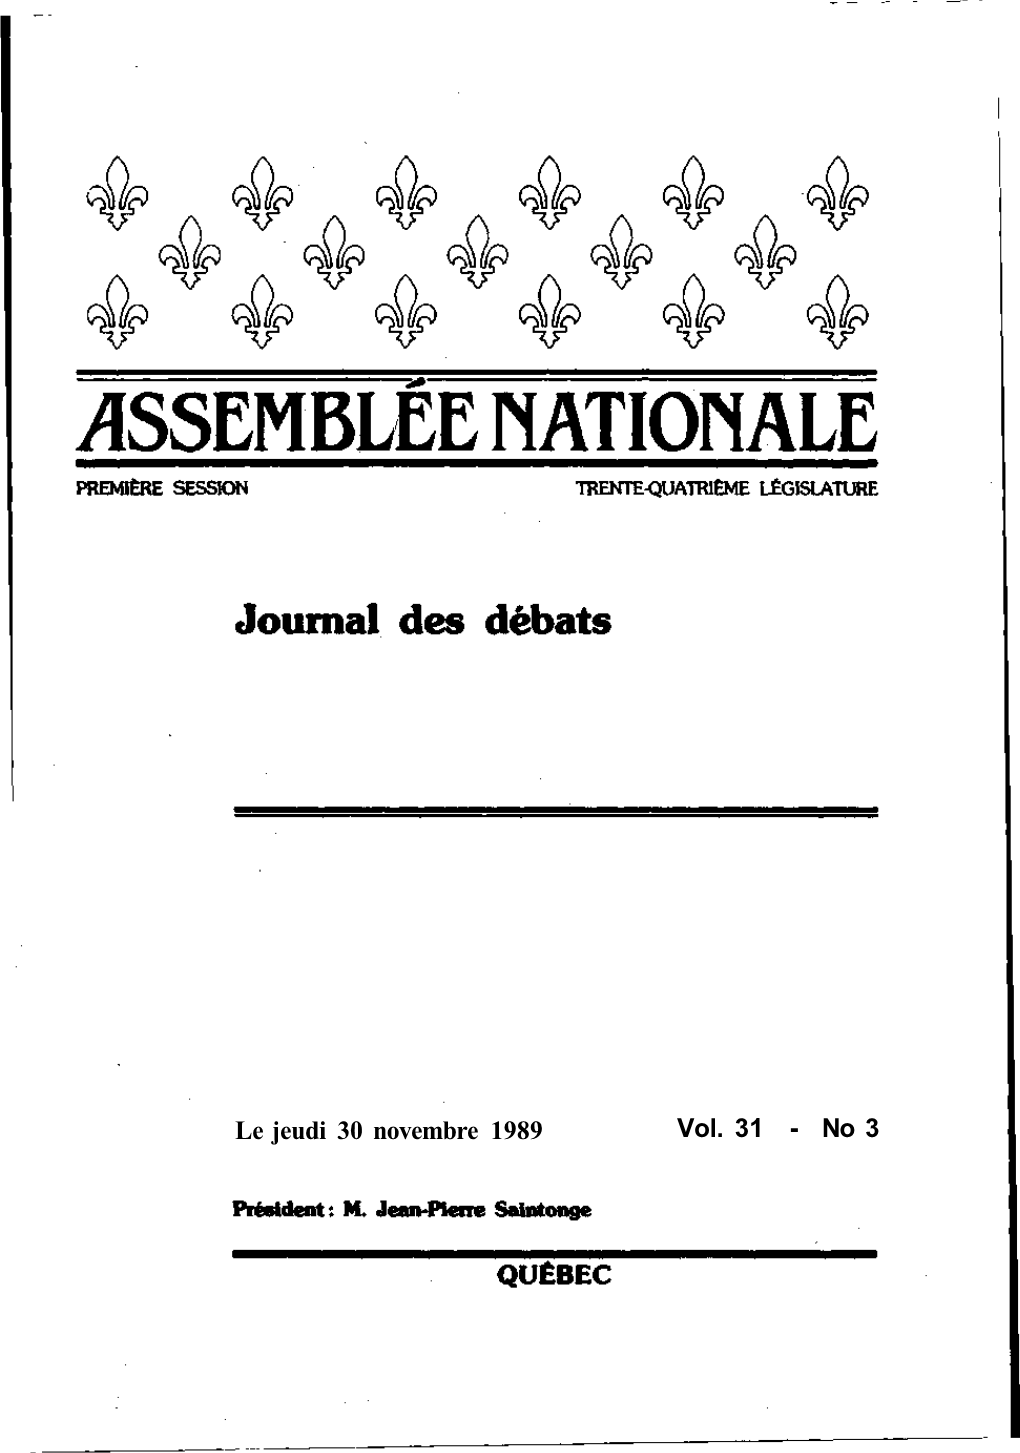 Le Jeudi 30 Novembre 1989 Vol. 31 - No 3 Table Des Matières